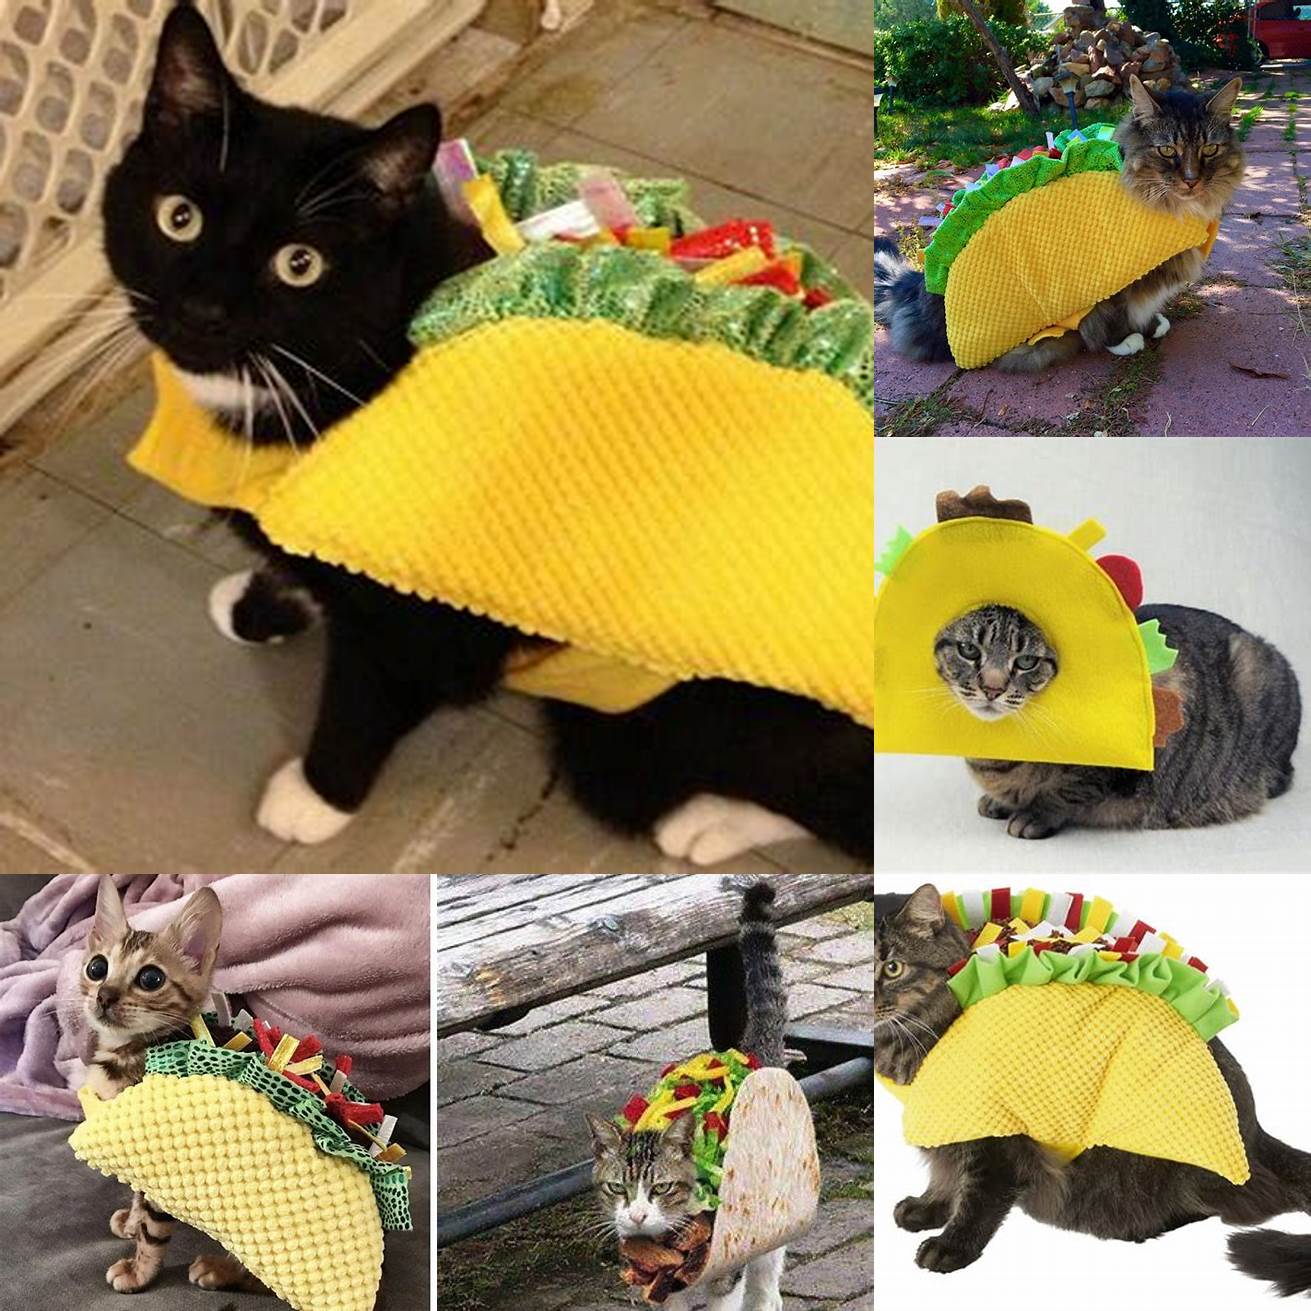 A Cat Wearing a Taco Costume